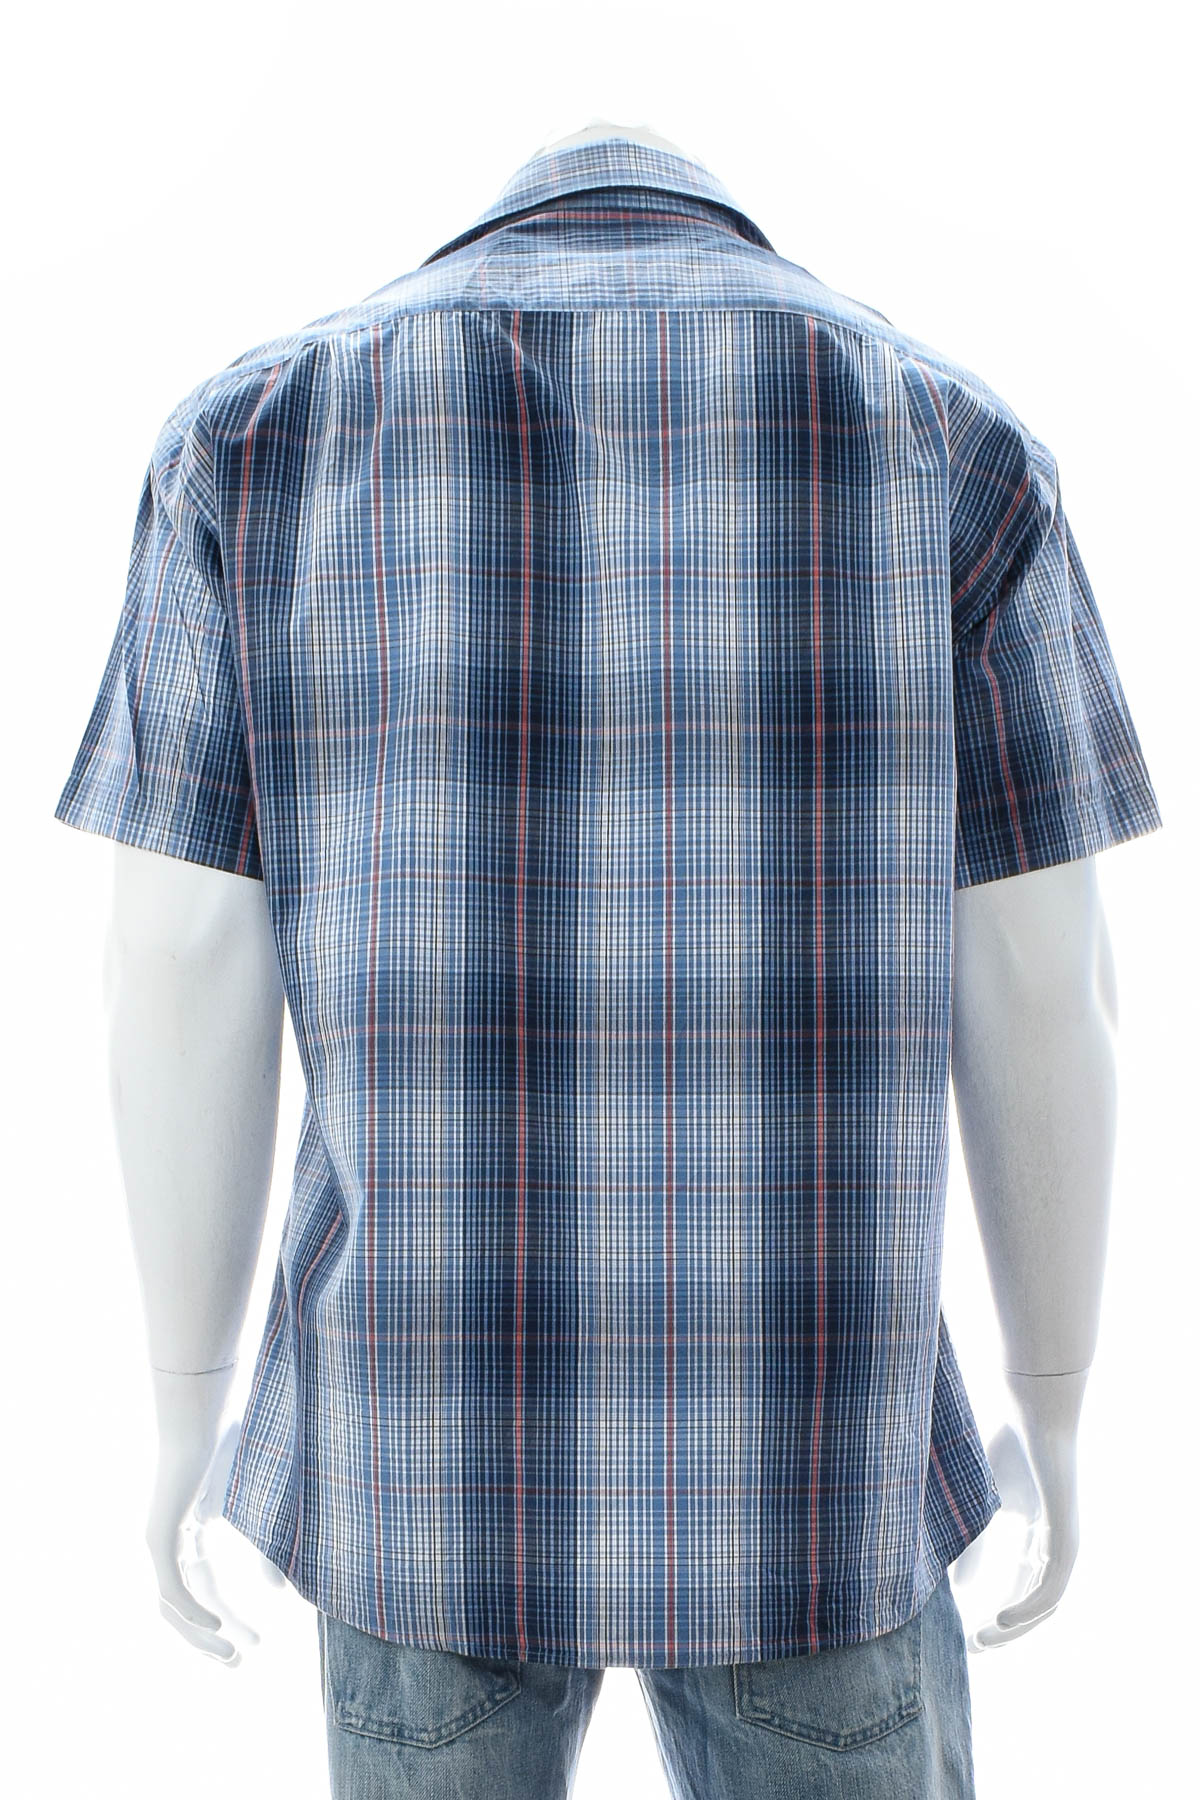 Men's shirt - Essentials by Tchibo - 1